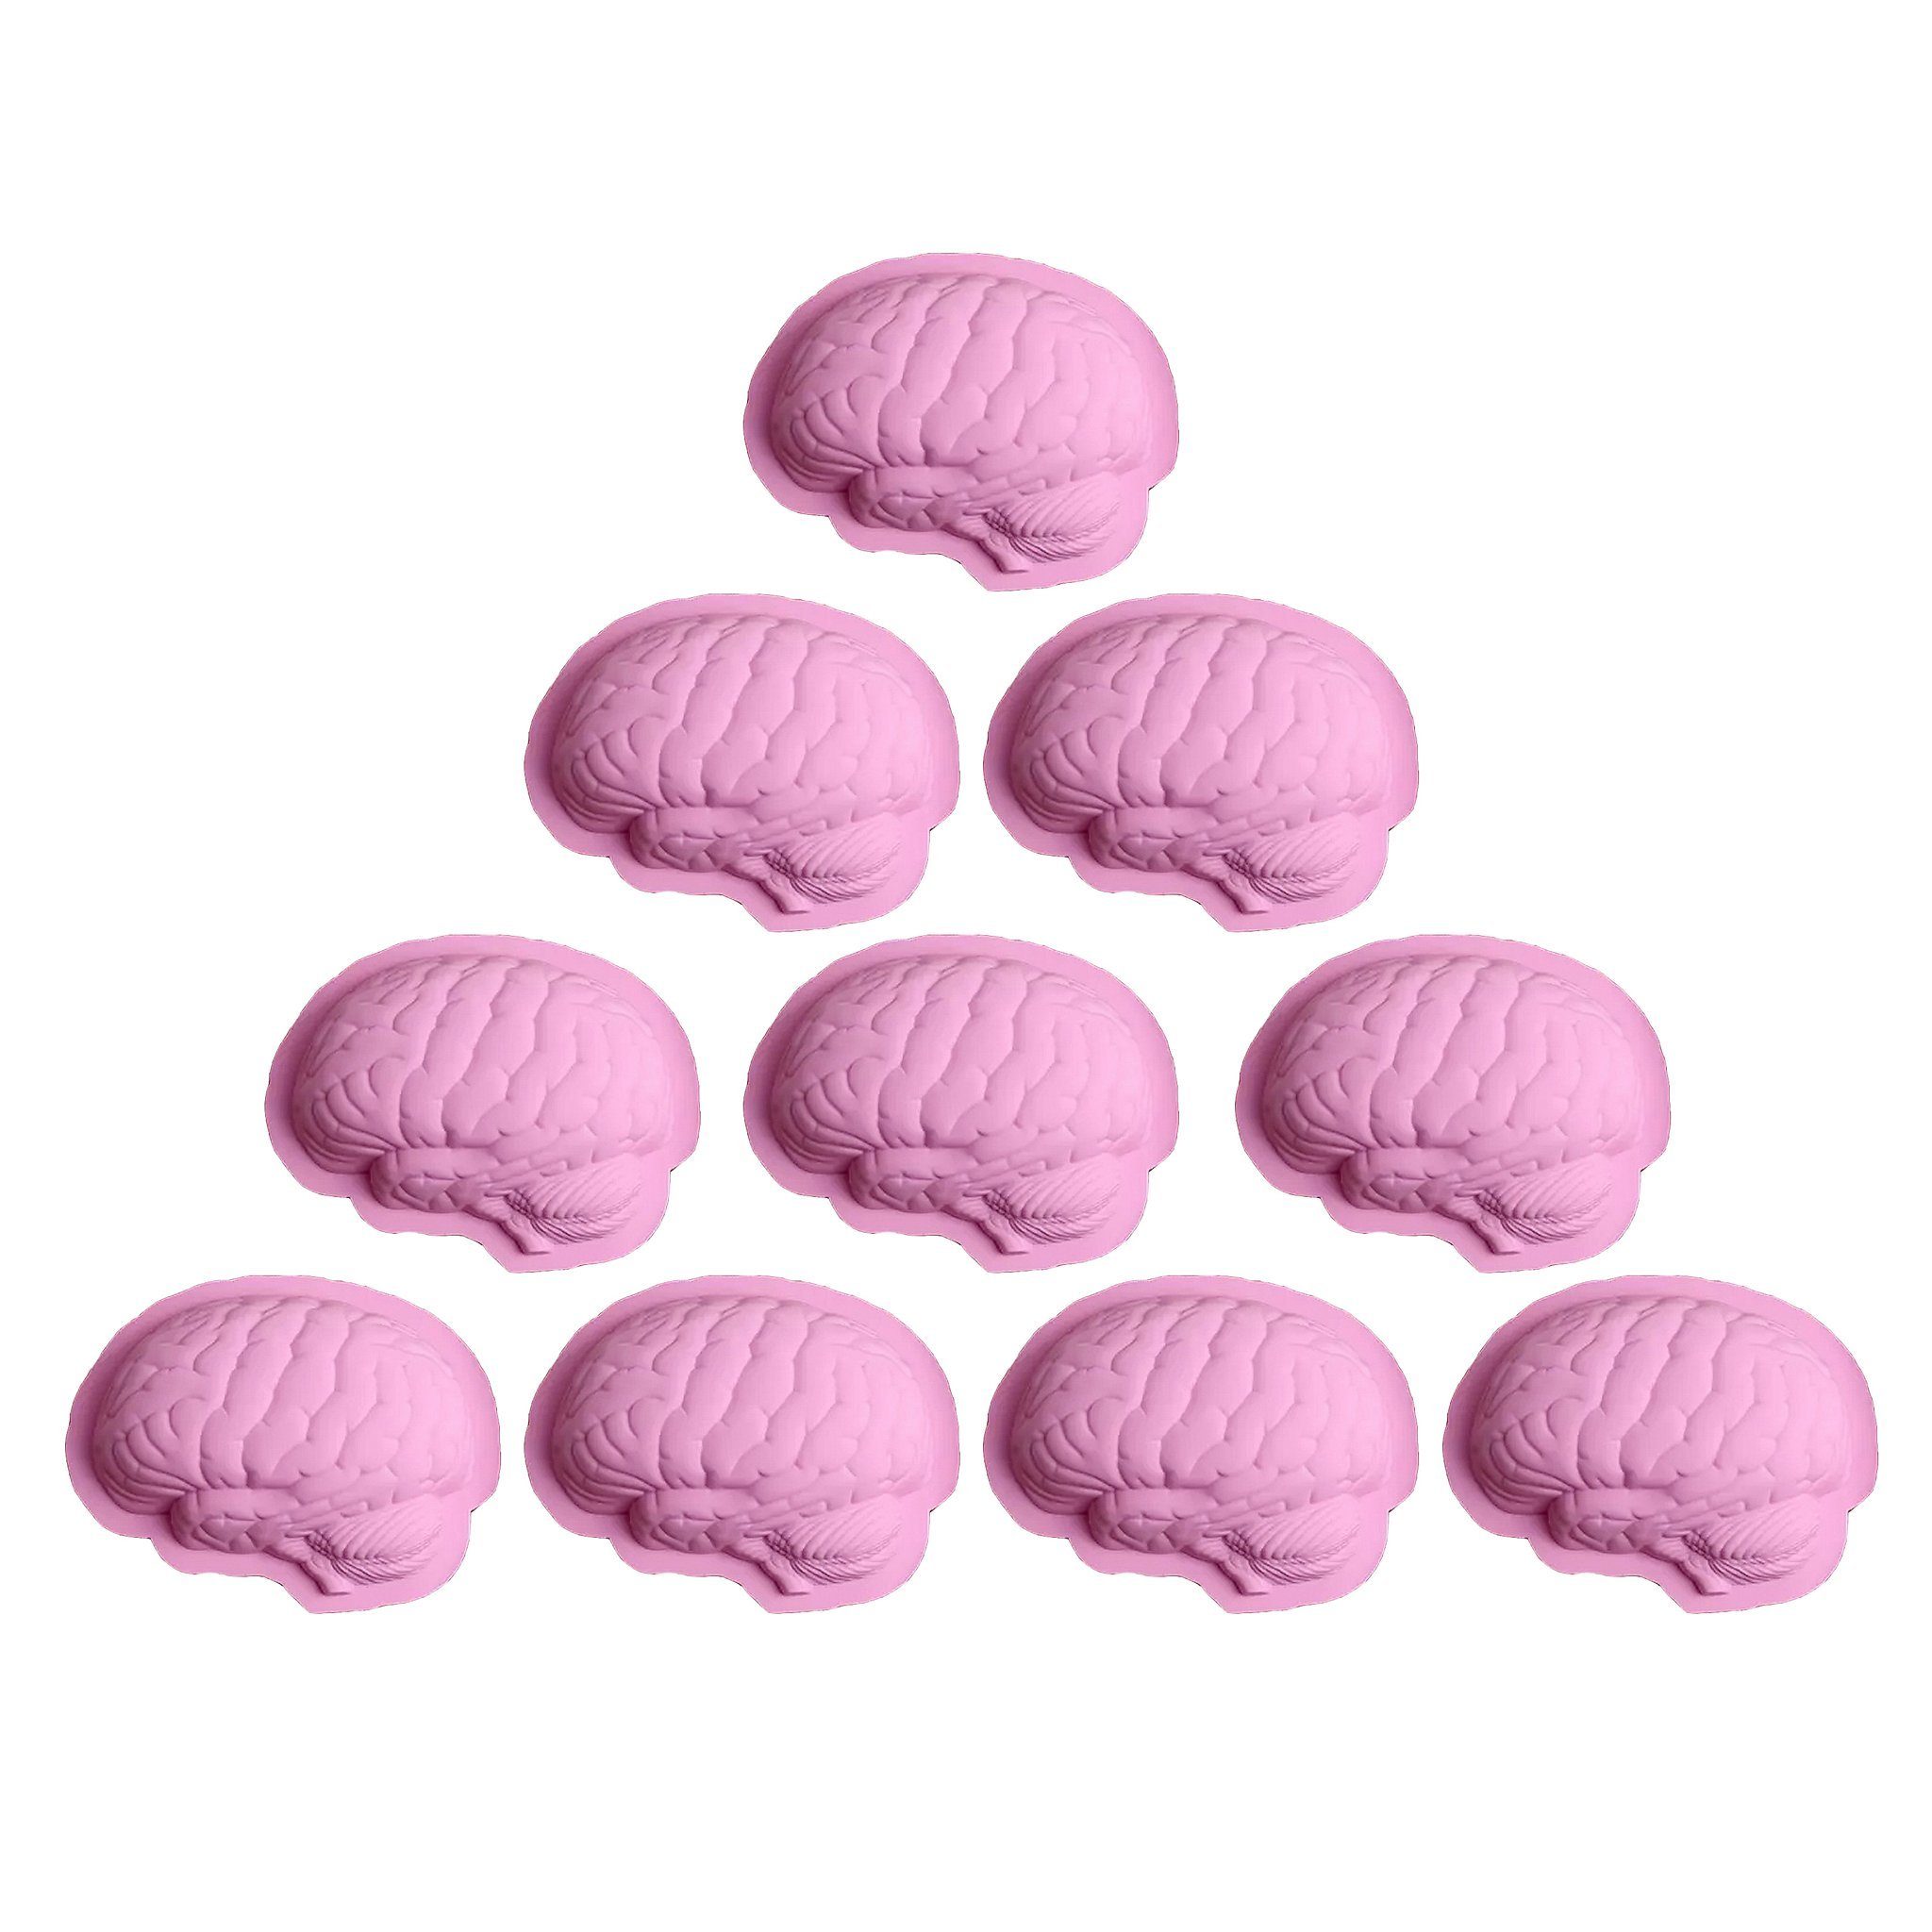 Metamorph Silikonform original in Mit Gehirn Silikon (1-tlg), 600, Backen Pudding Backform für gelingt zum aus Gehirngröße Silikonform Gehirn der und